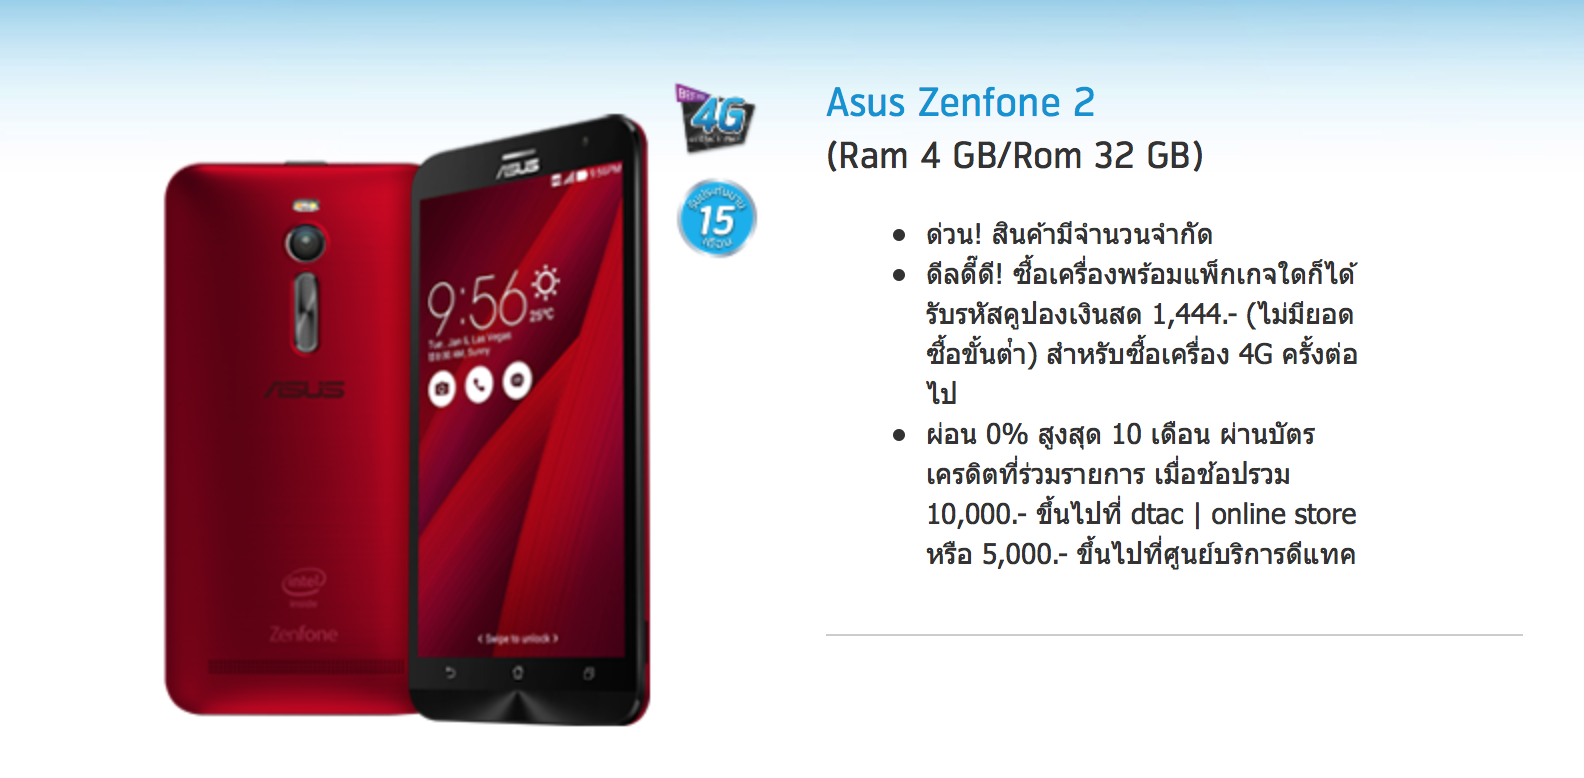 บ๊ะ!! Asus Zenfone 2 ที่ขายผ่าน Dtac Online Store หมดเกลี้ยงแล้วจ้าาา